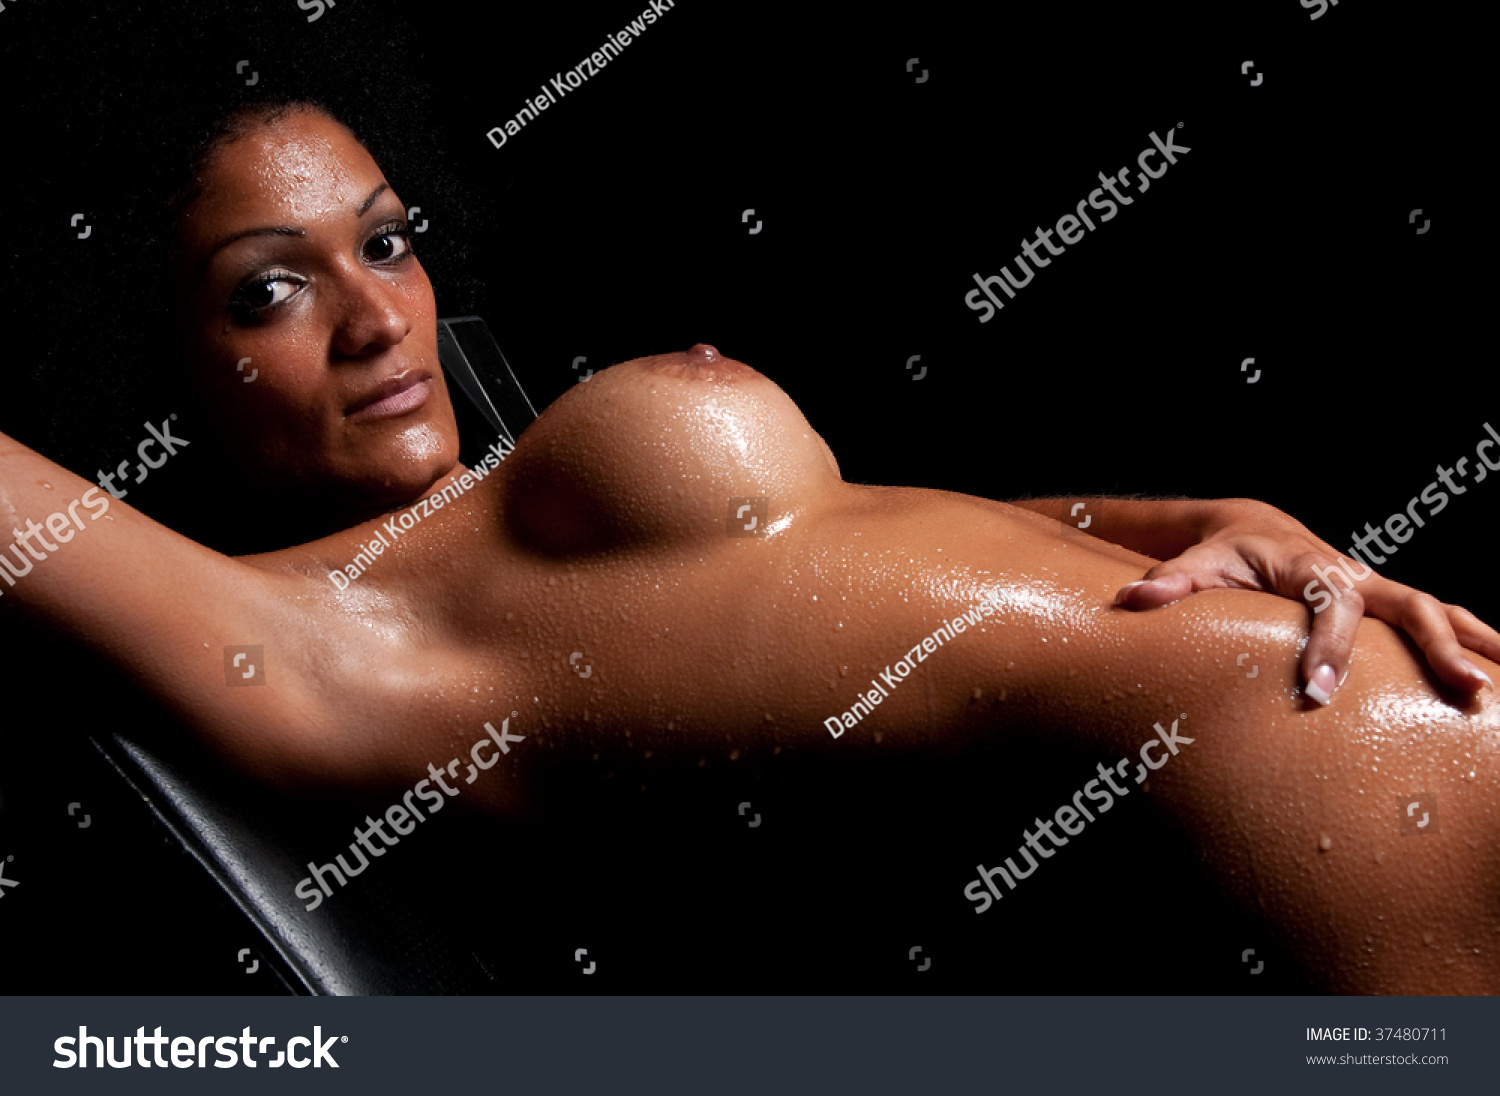 Hispanic Nude Woman